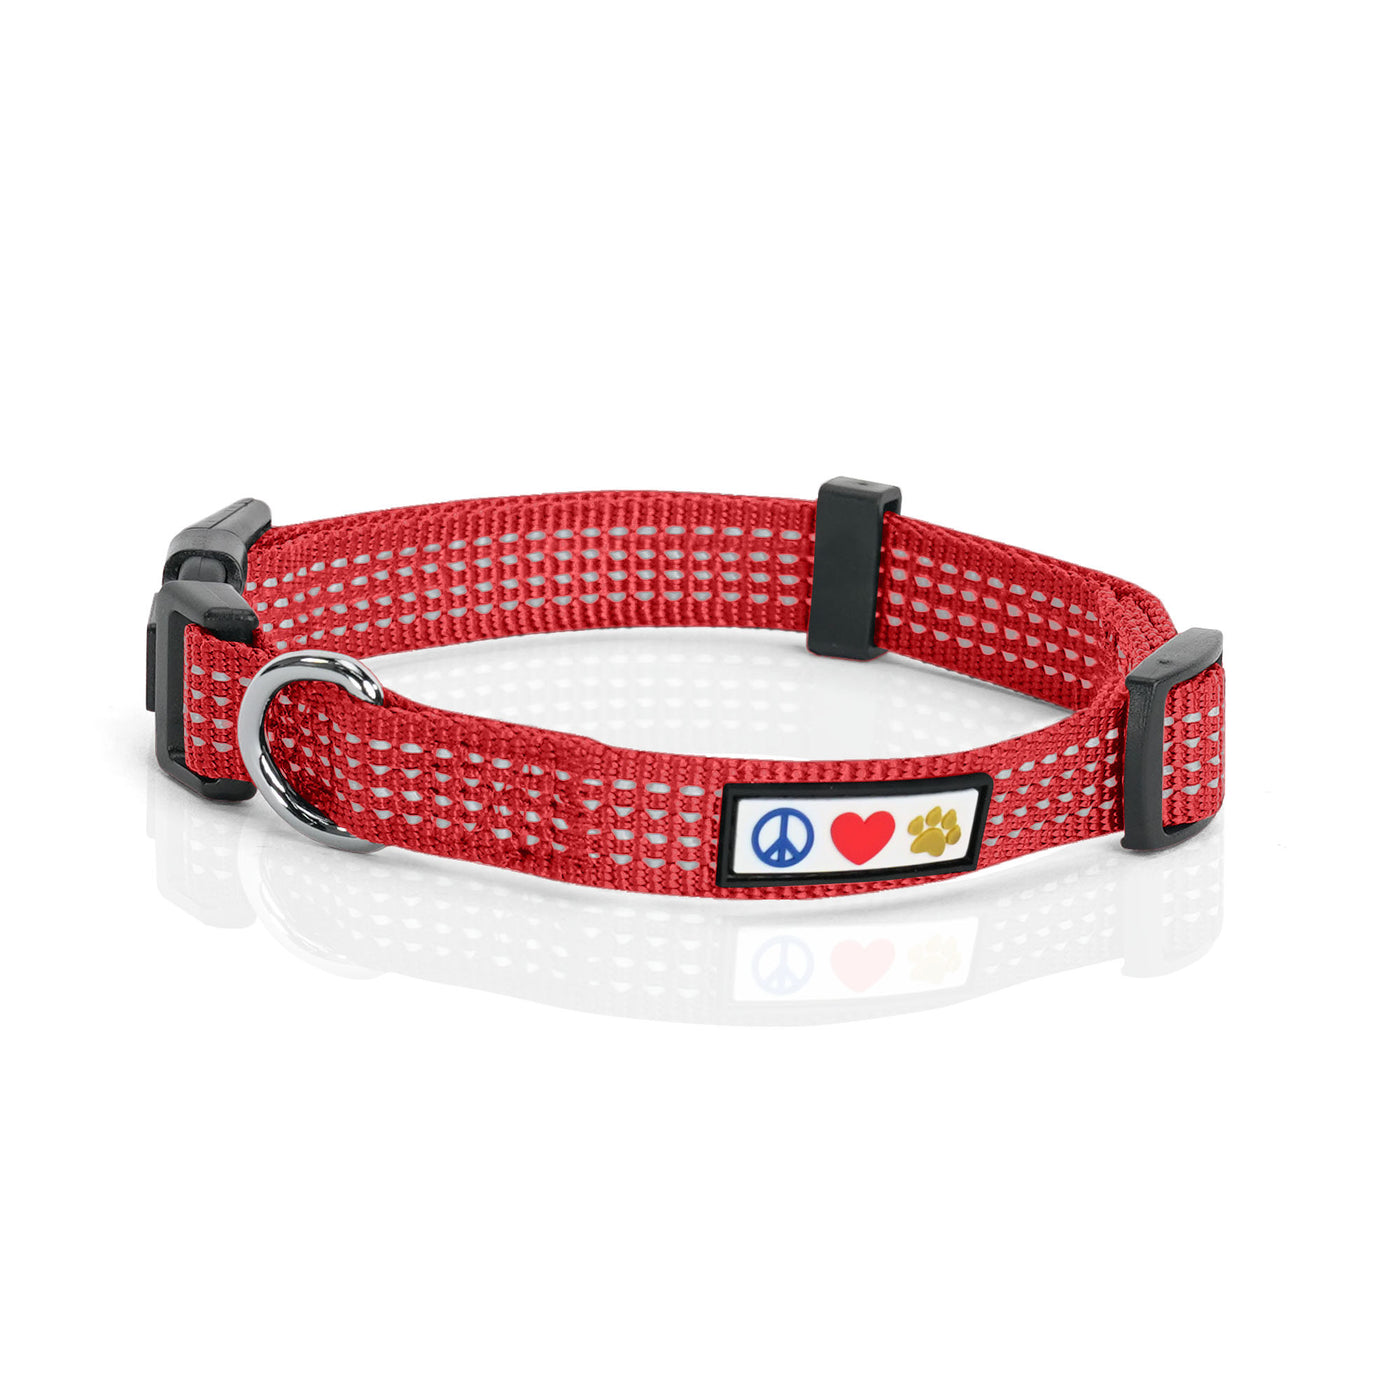 Red Reflective Dog Collar